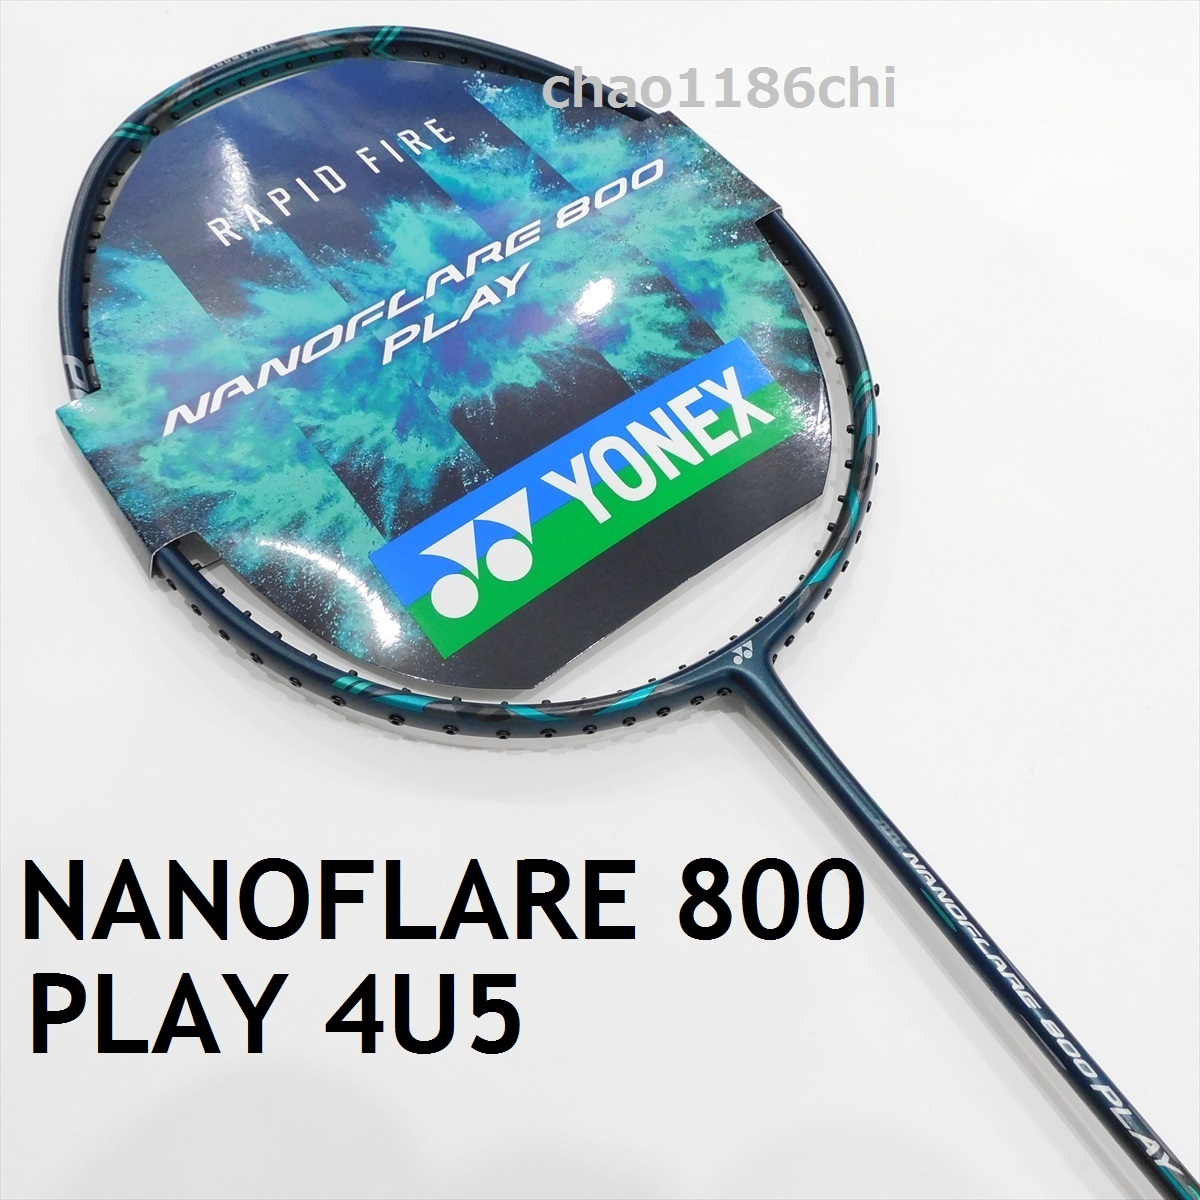 ナノフレア800 4UG5 - ラケット